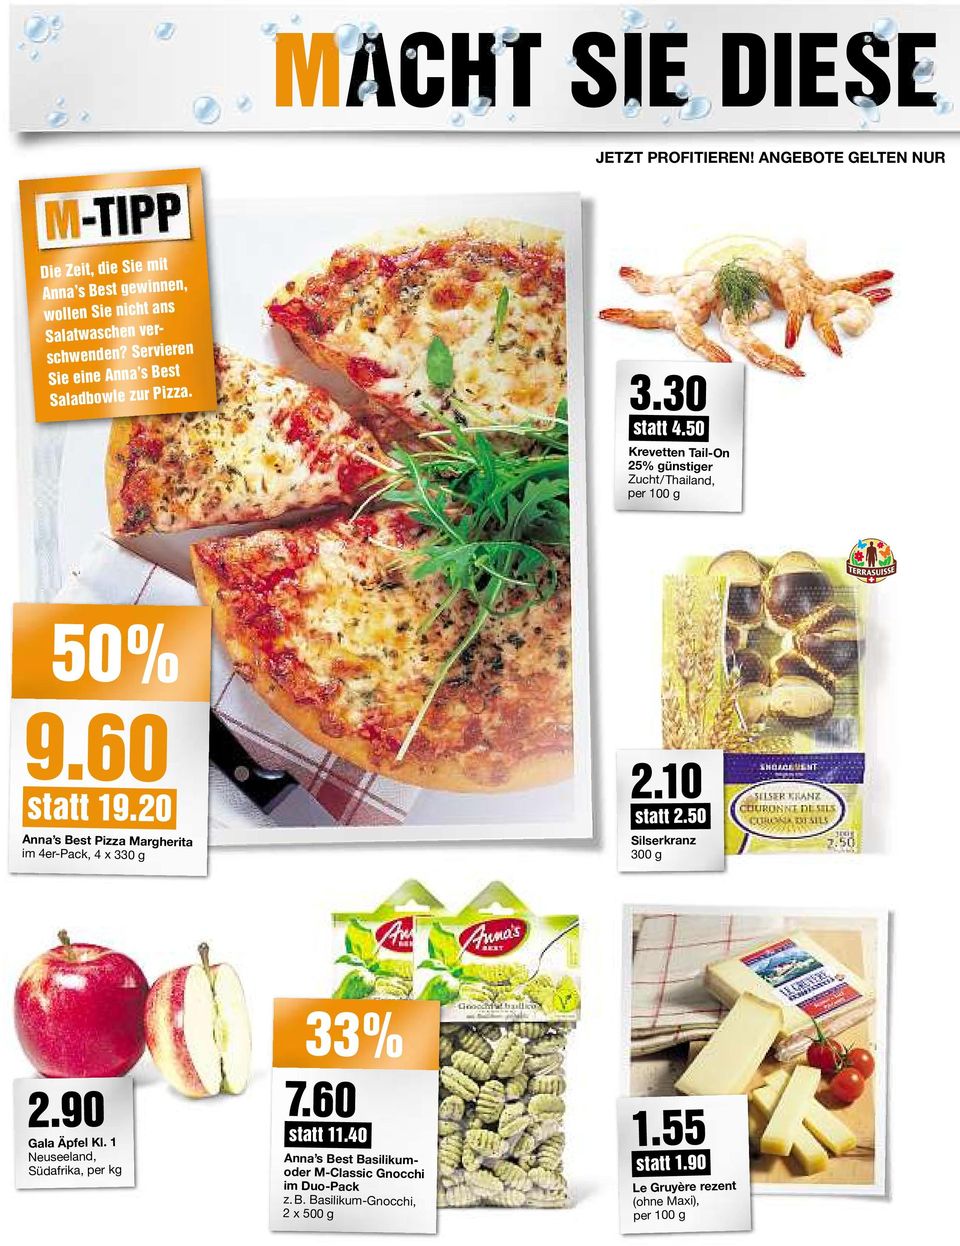 Servieren Sie eine Anna sbest Saladbowle zur Pizza. 3.30 statt 4.50 Krevetten Tail-On 25% günstiger Zucht/Thailand, 50% 9.60 statt 19.